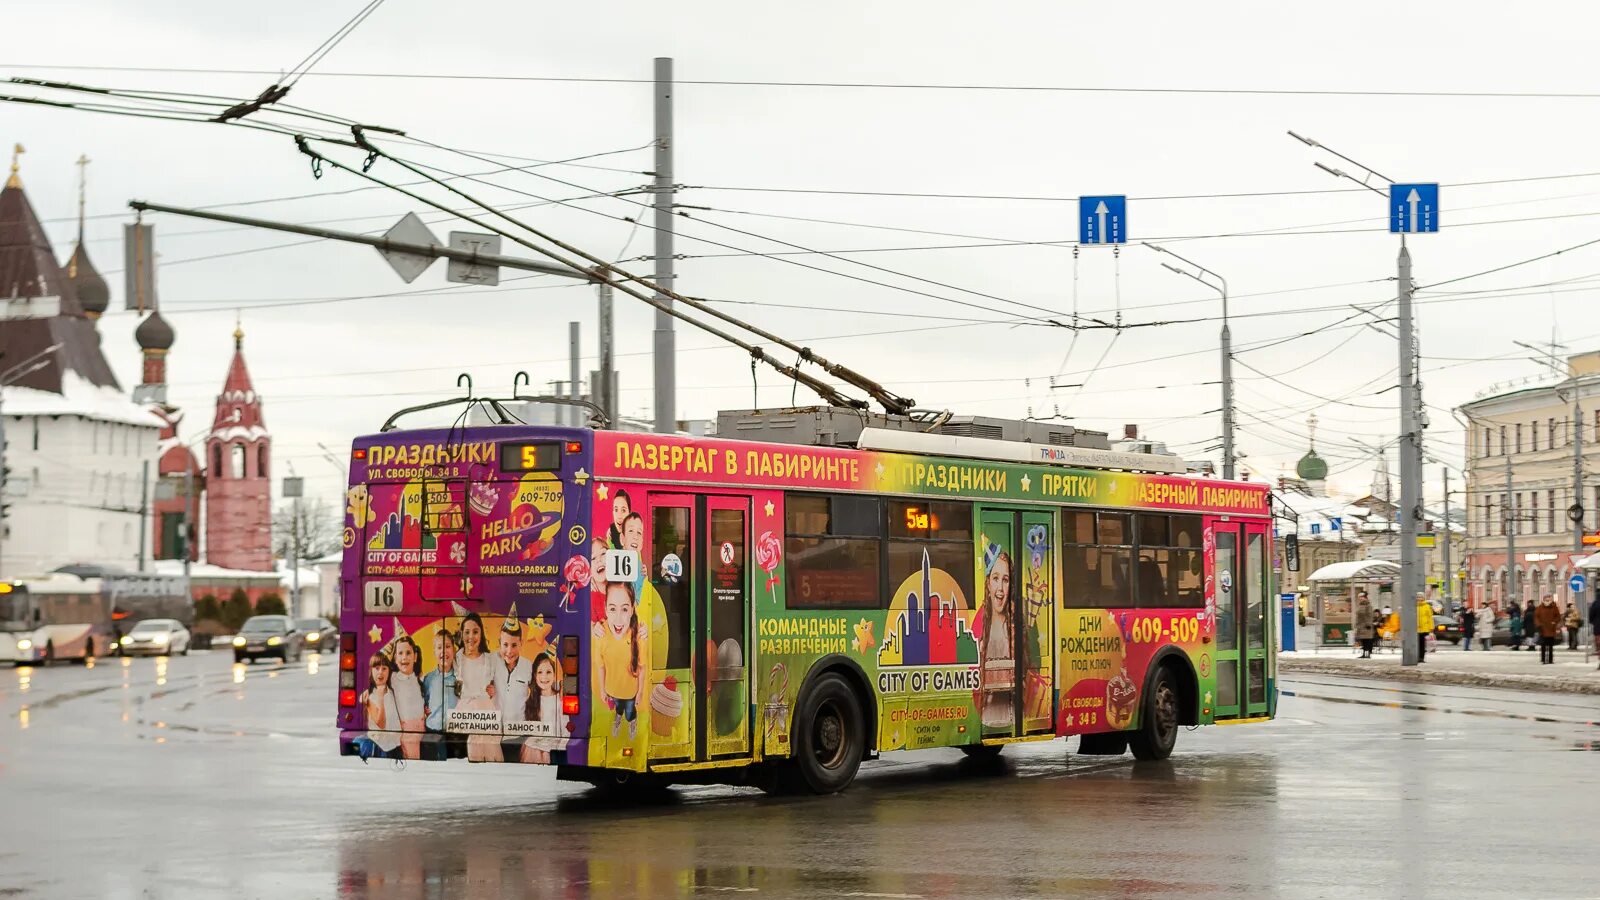 Троллейбус Тролза 5275. Троллейбус Ярославль 2023. Троллейбус Ярославль 2000. Новый троллейбус Ярославль 2024.